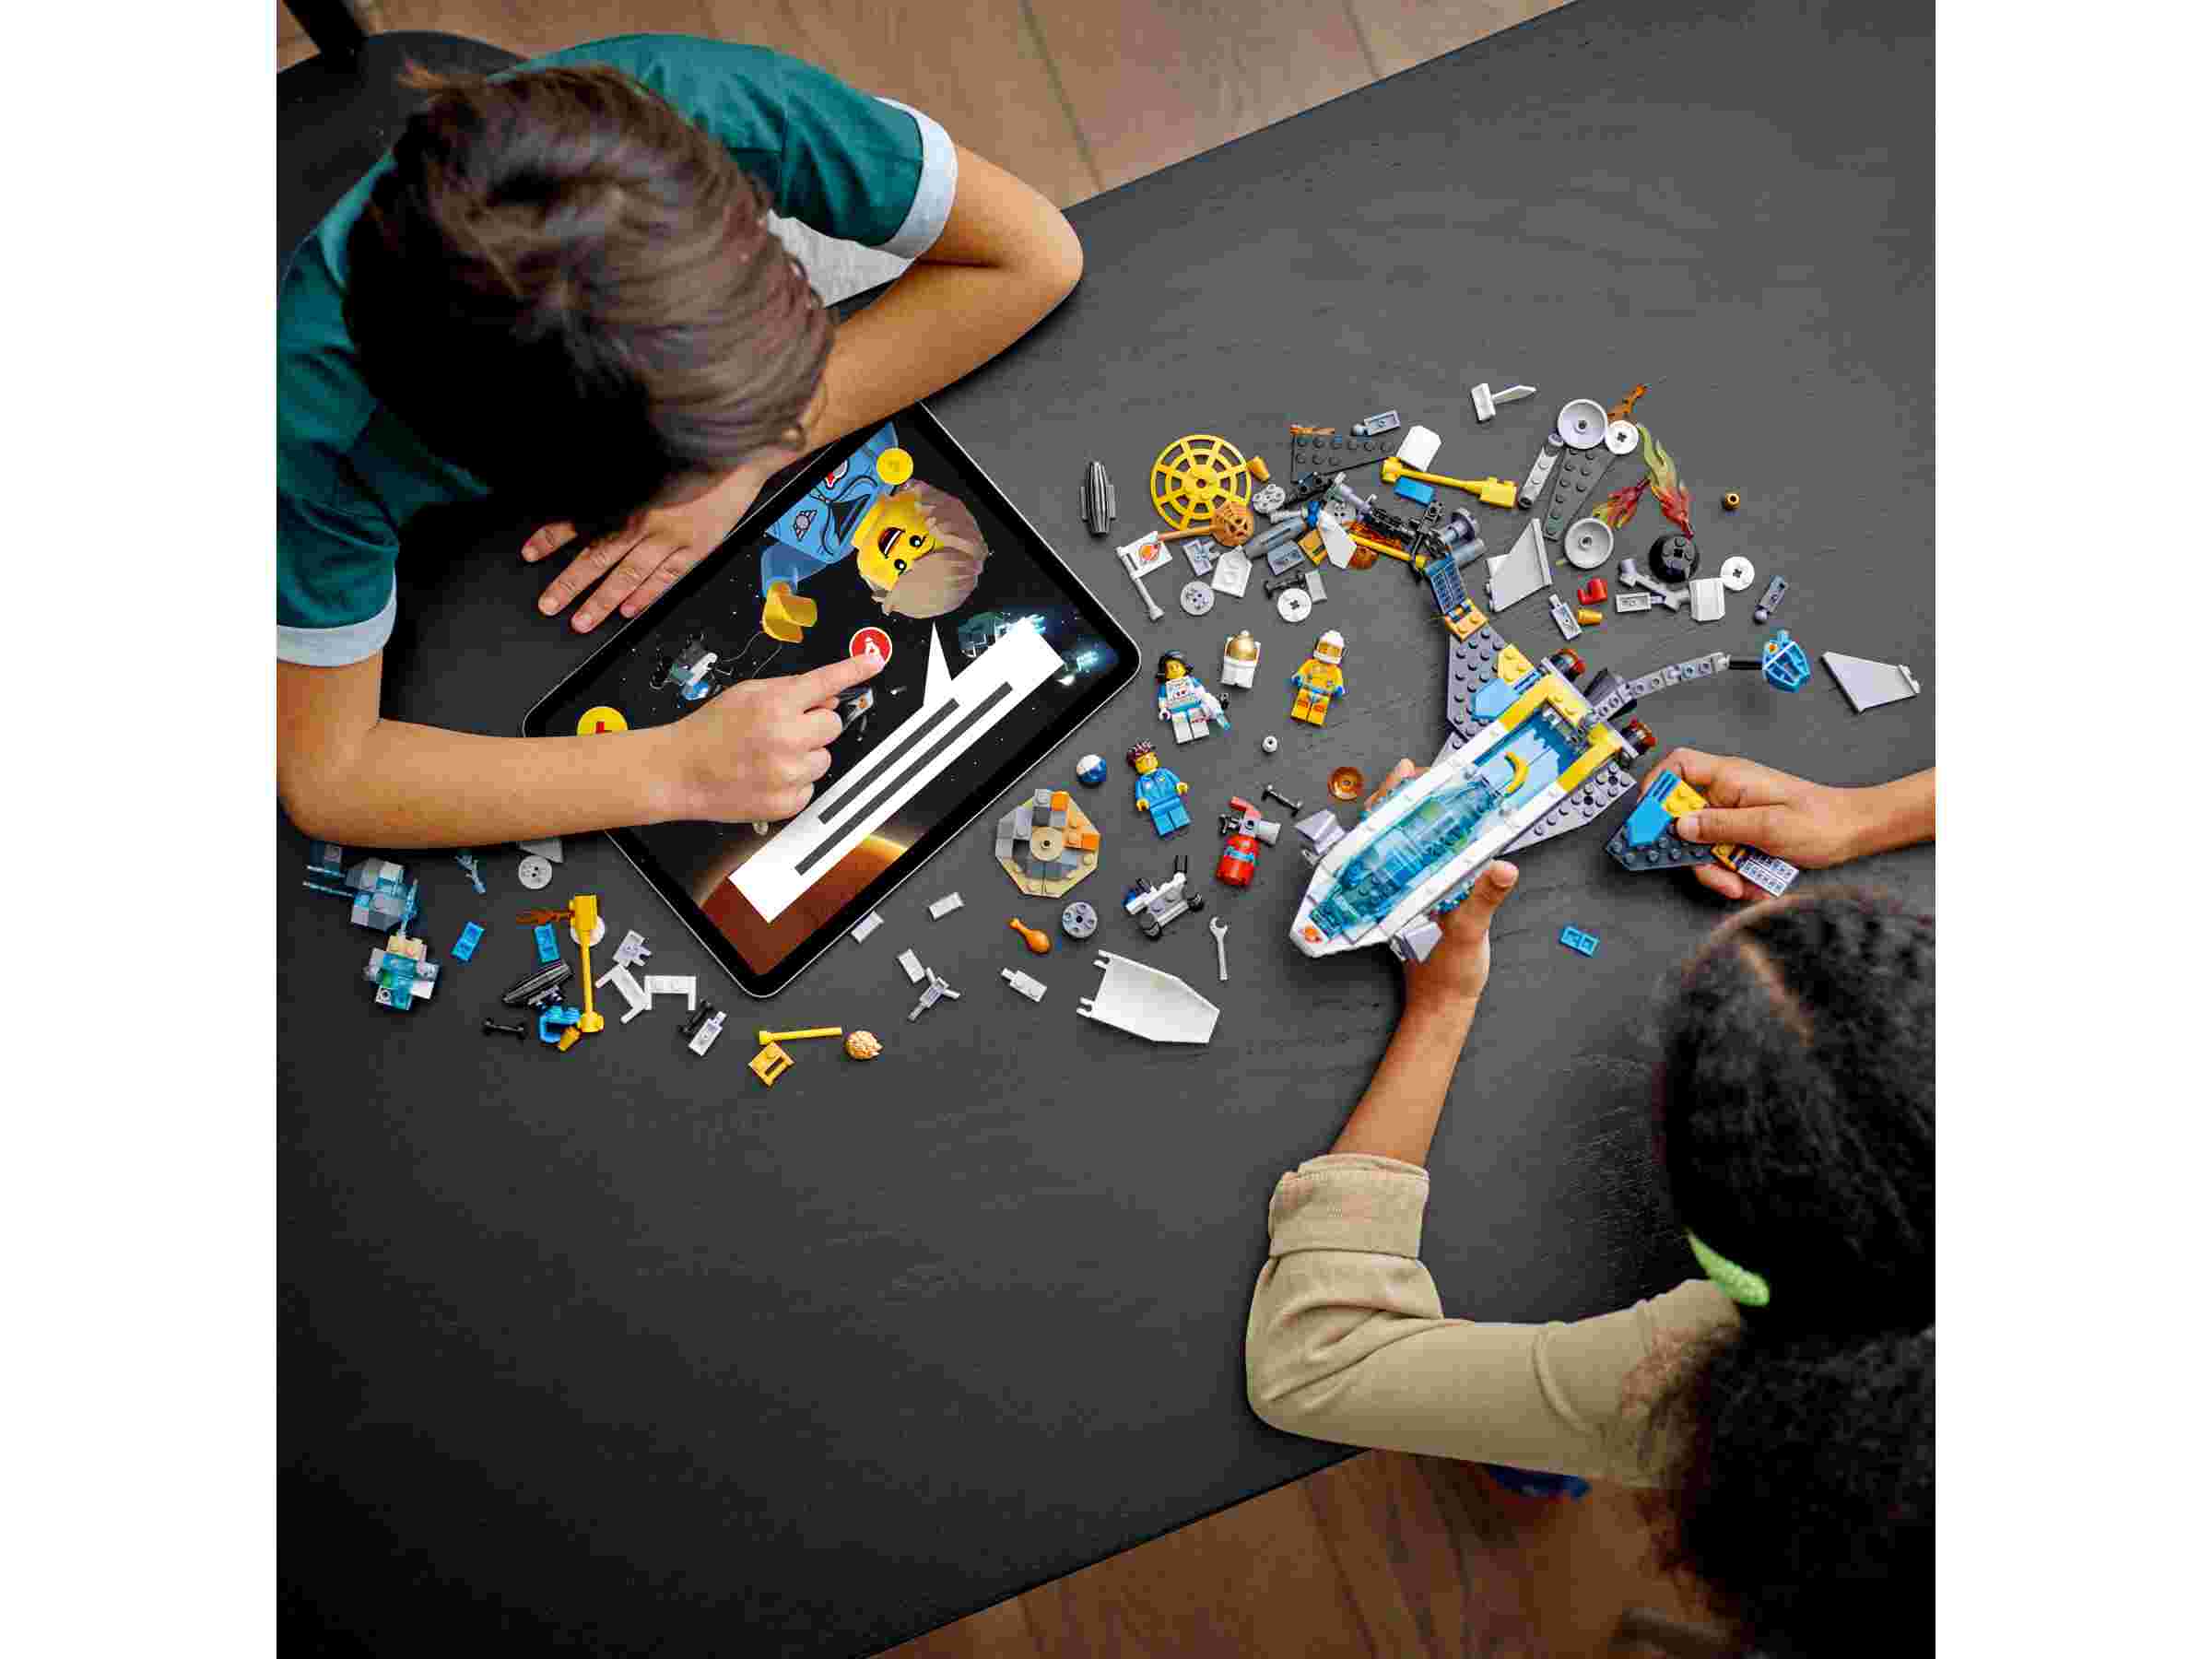 LEGO 60354 City Erkundungsmissionen im Weltraum mit Raumschiff u. 3 Minifiguren